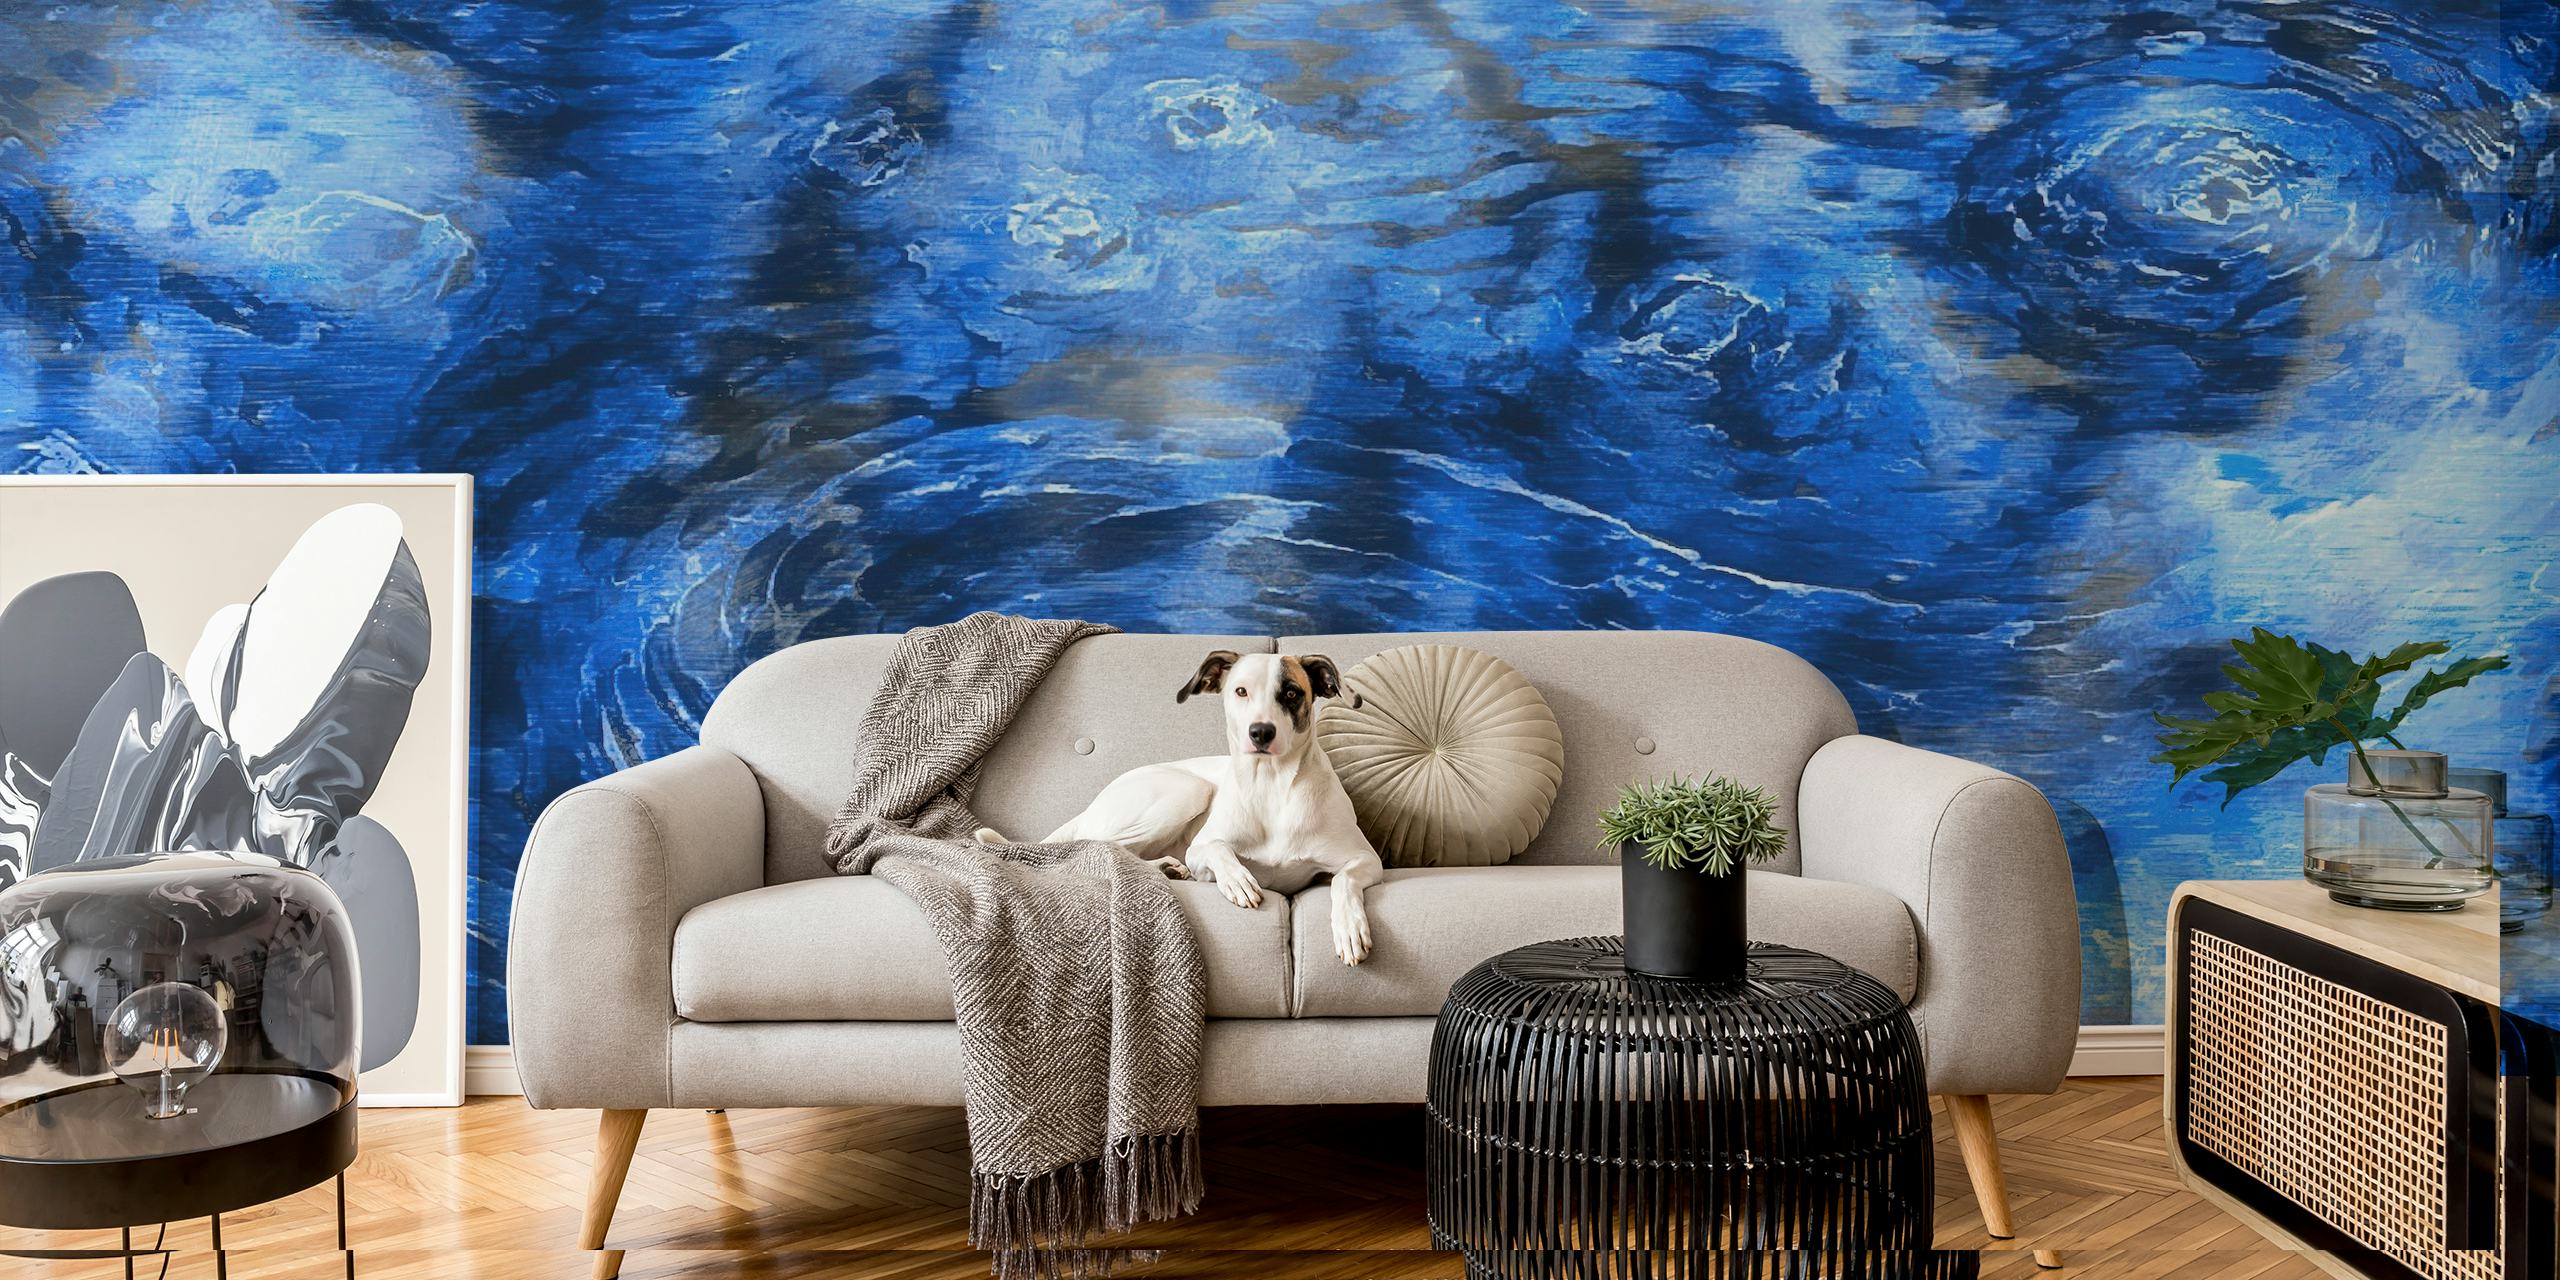 Mural de parede Van Gogh Clouds em estilo impressionista com padrões giratórios em azul e branco